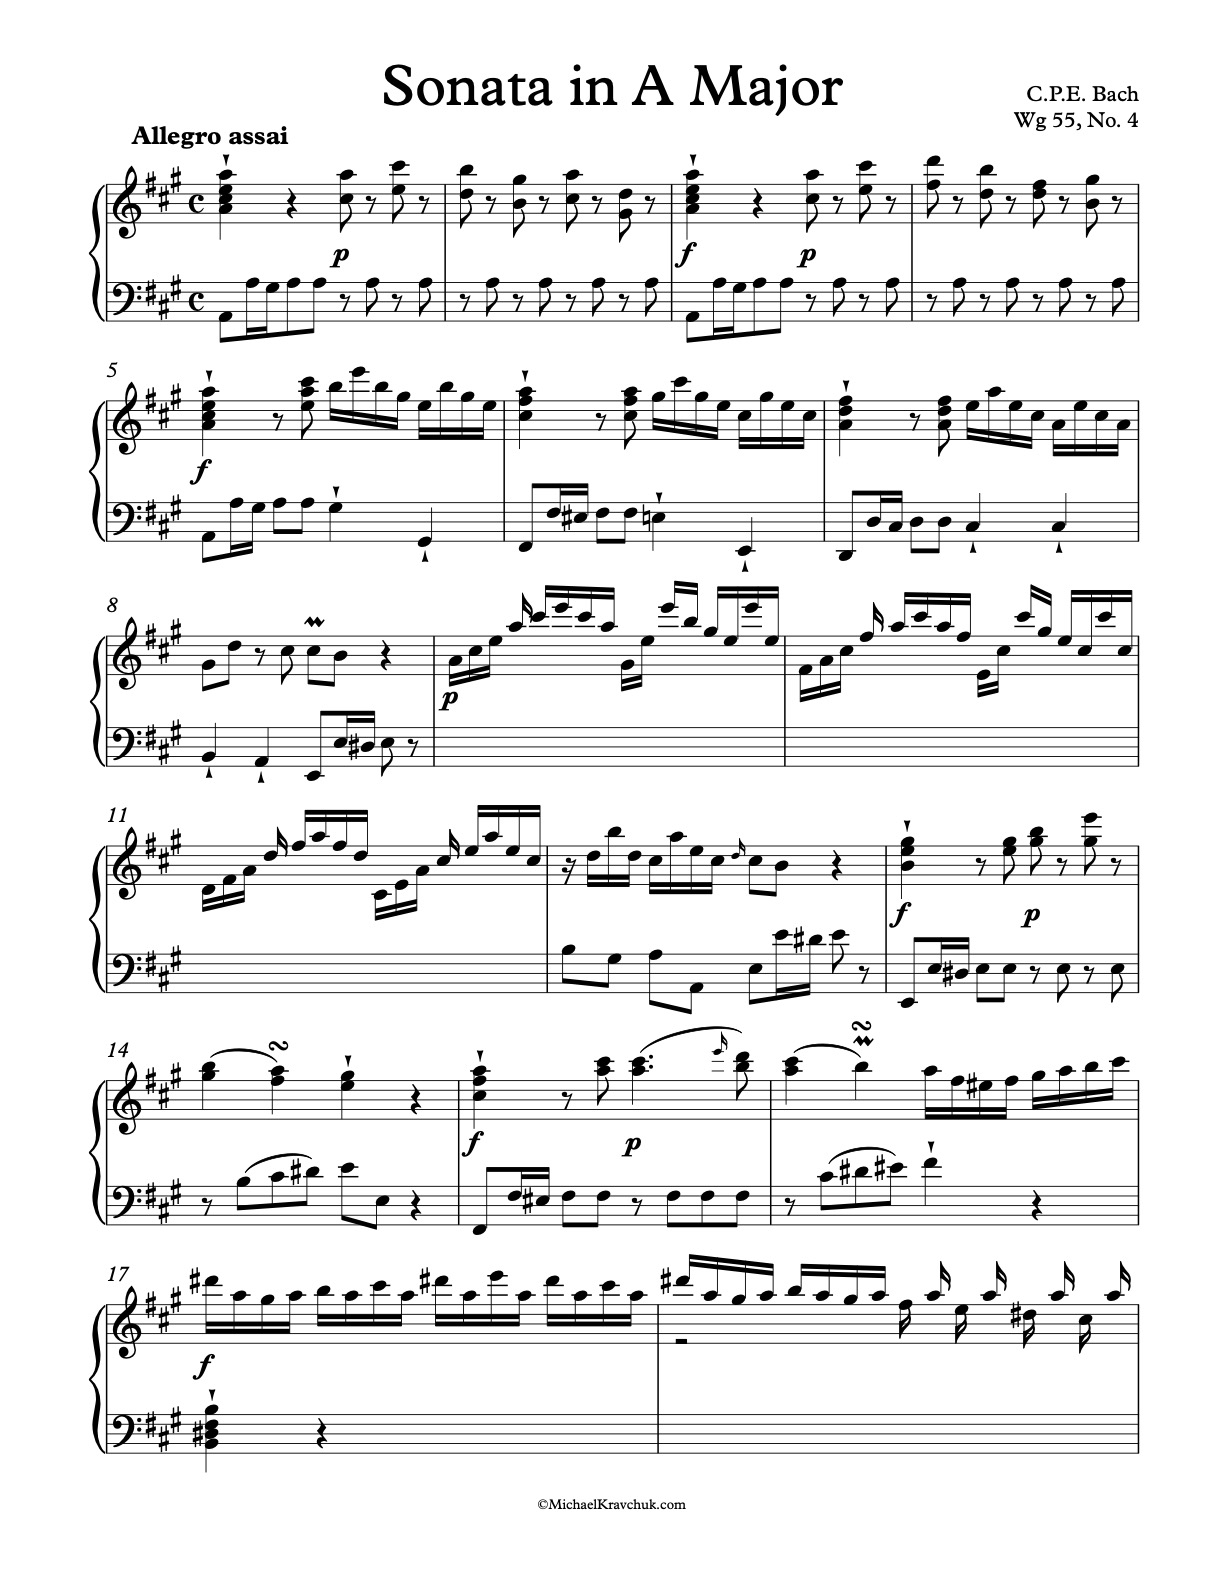 Sonata in A Major Wq 55, No. 4 Piano Sheet Music